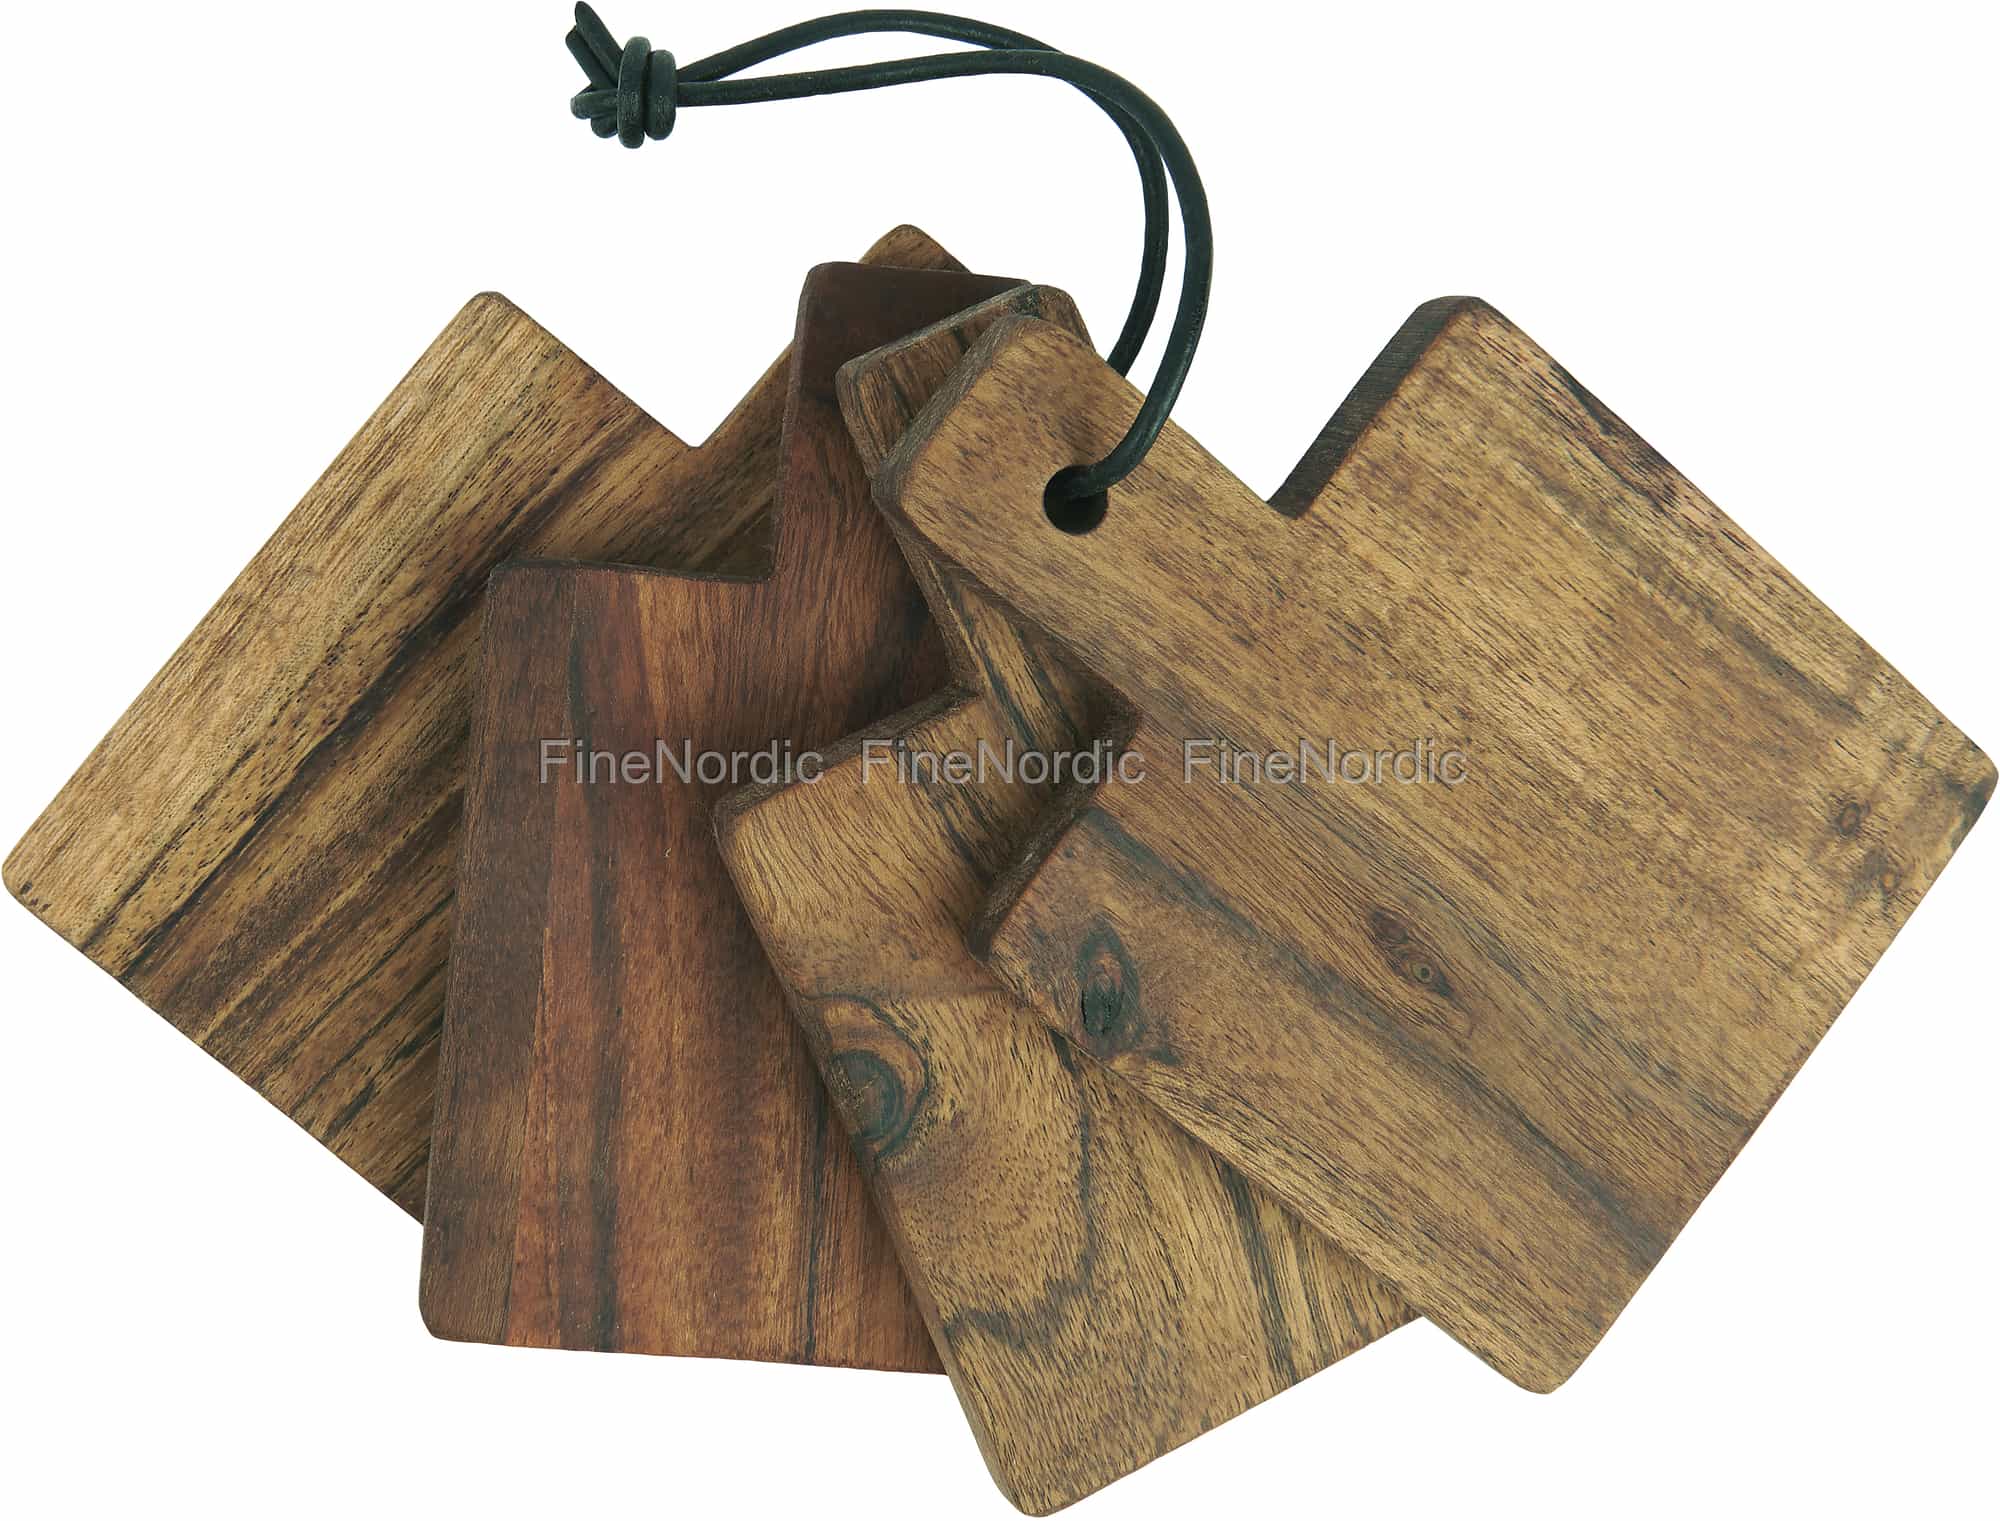 mini wood cutting boards